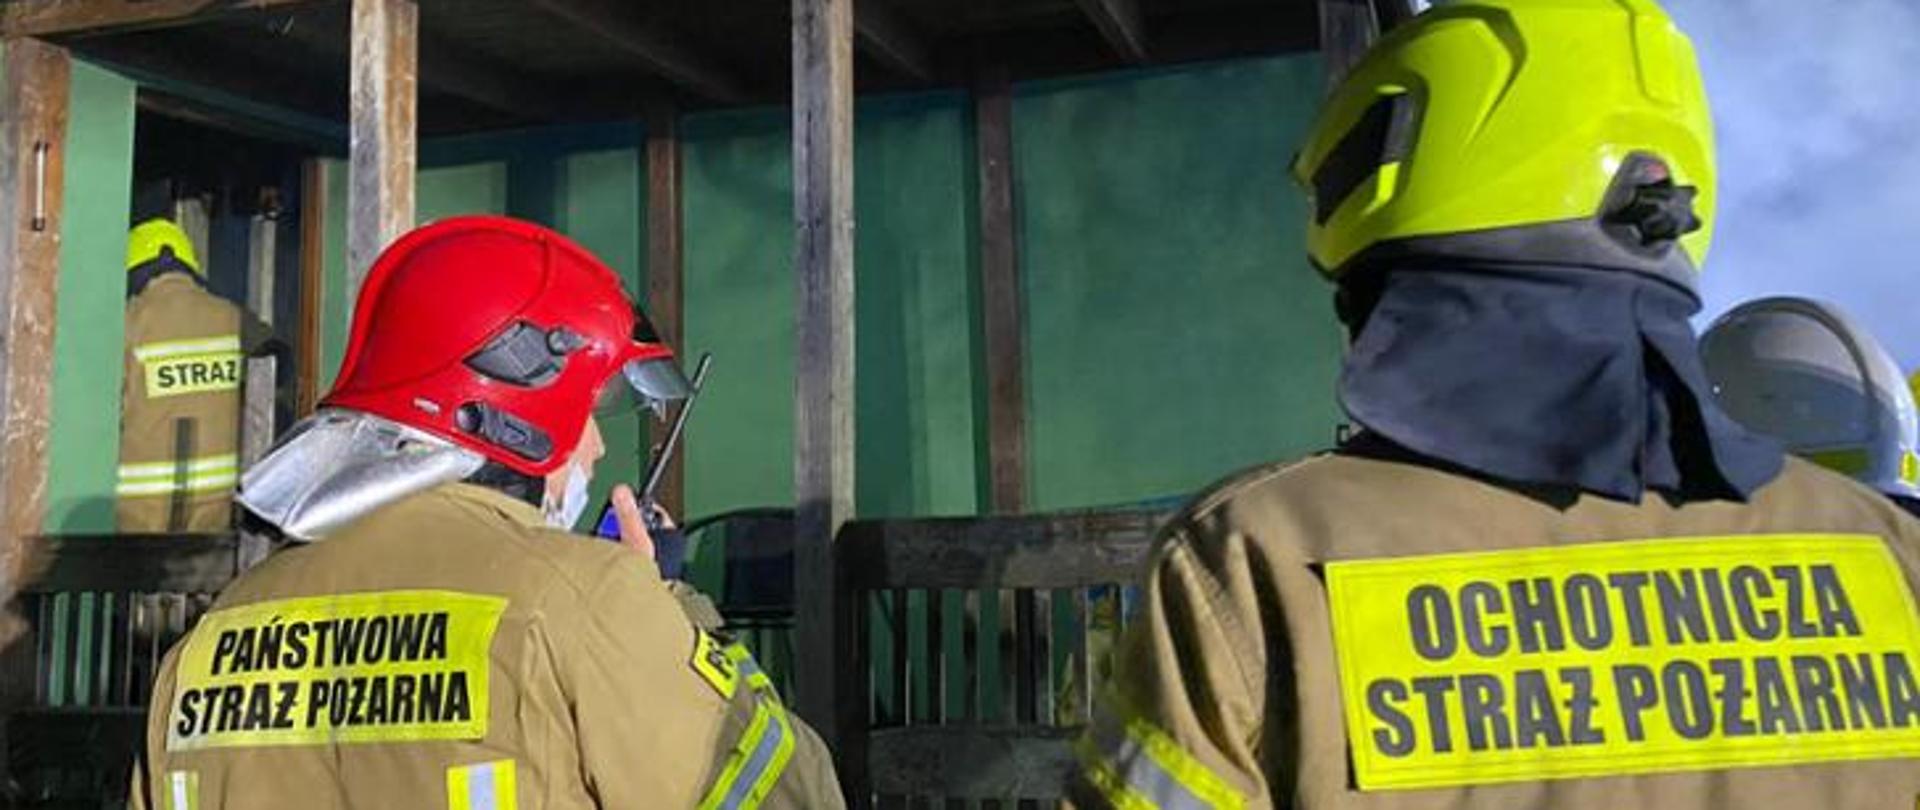 Zdjęcie przedstawia od lewej strażaka Państwowej Straży Pożarnej ubranego w ubranie specjalne oraz czerwony hełm, z prawej strażak Ochotniczej Straży Pożarnej ubrany w ubranie specjalne oraz żółty hełm. W tle budynek w którym prowadzona jest akcja gaśnicza.